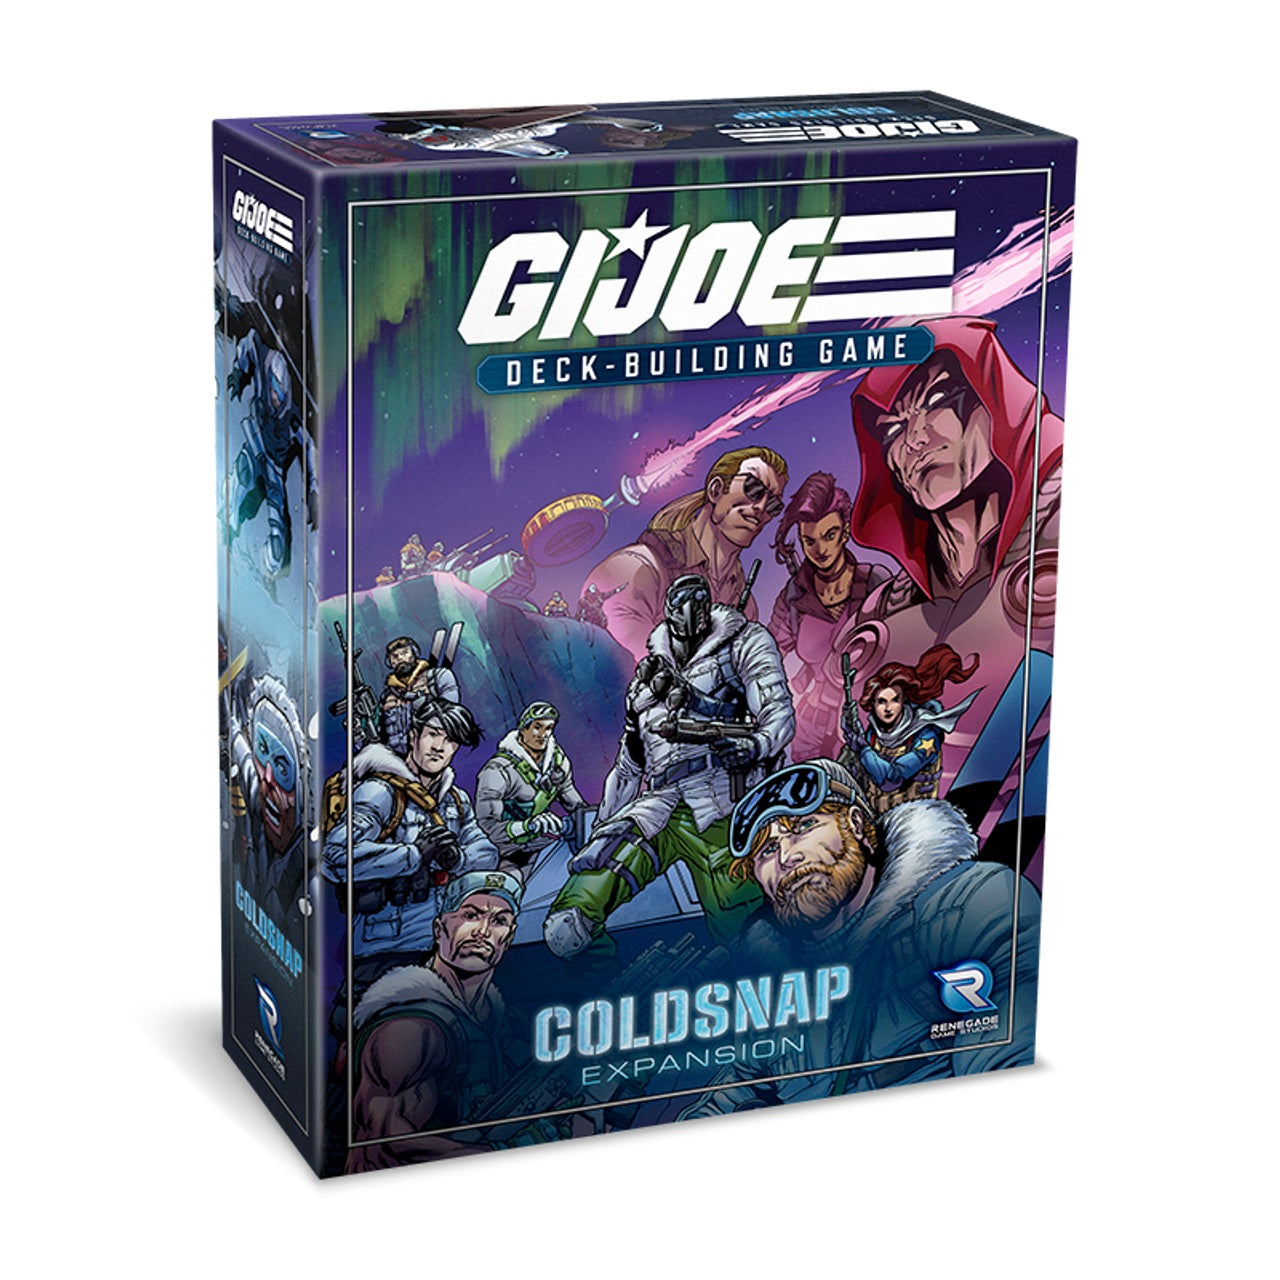 G.I. Joe Deck-Building Game - Cold Snap Expansion